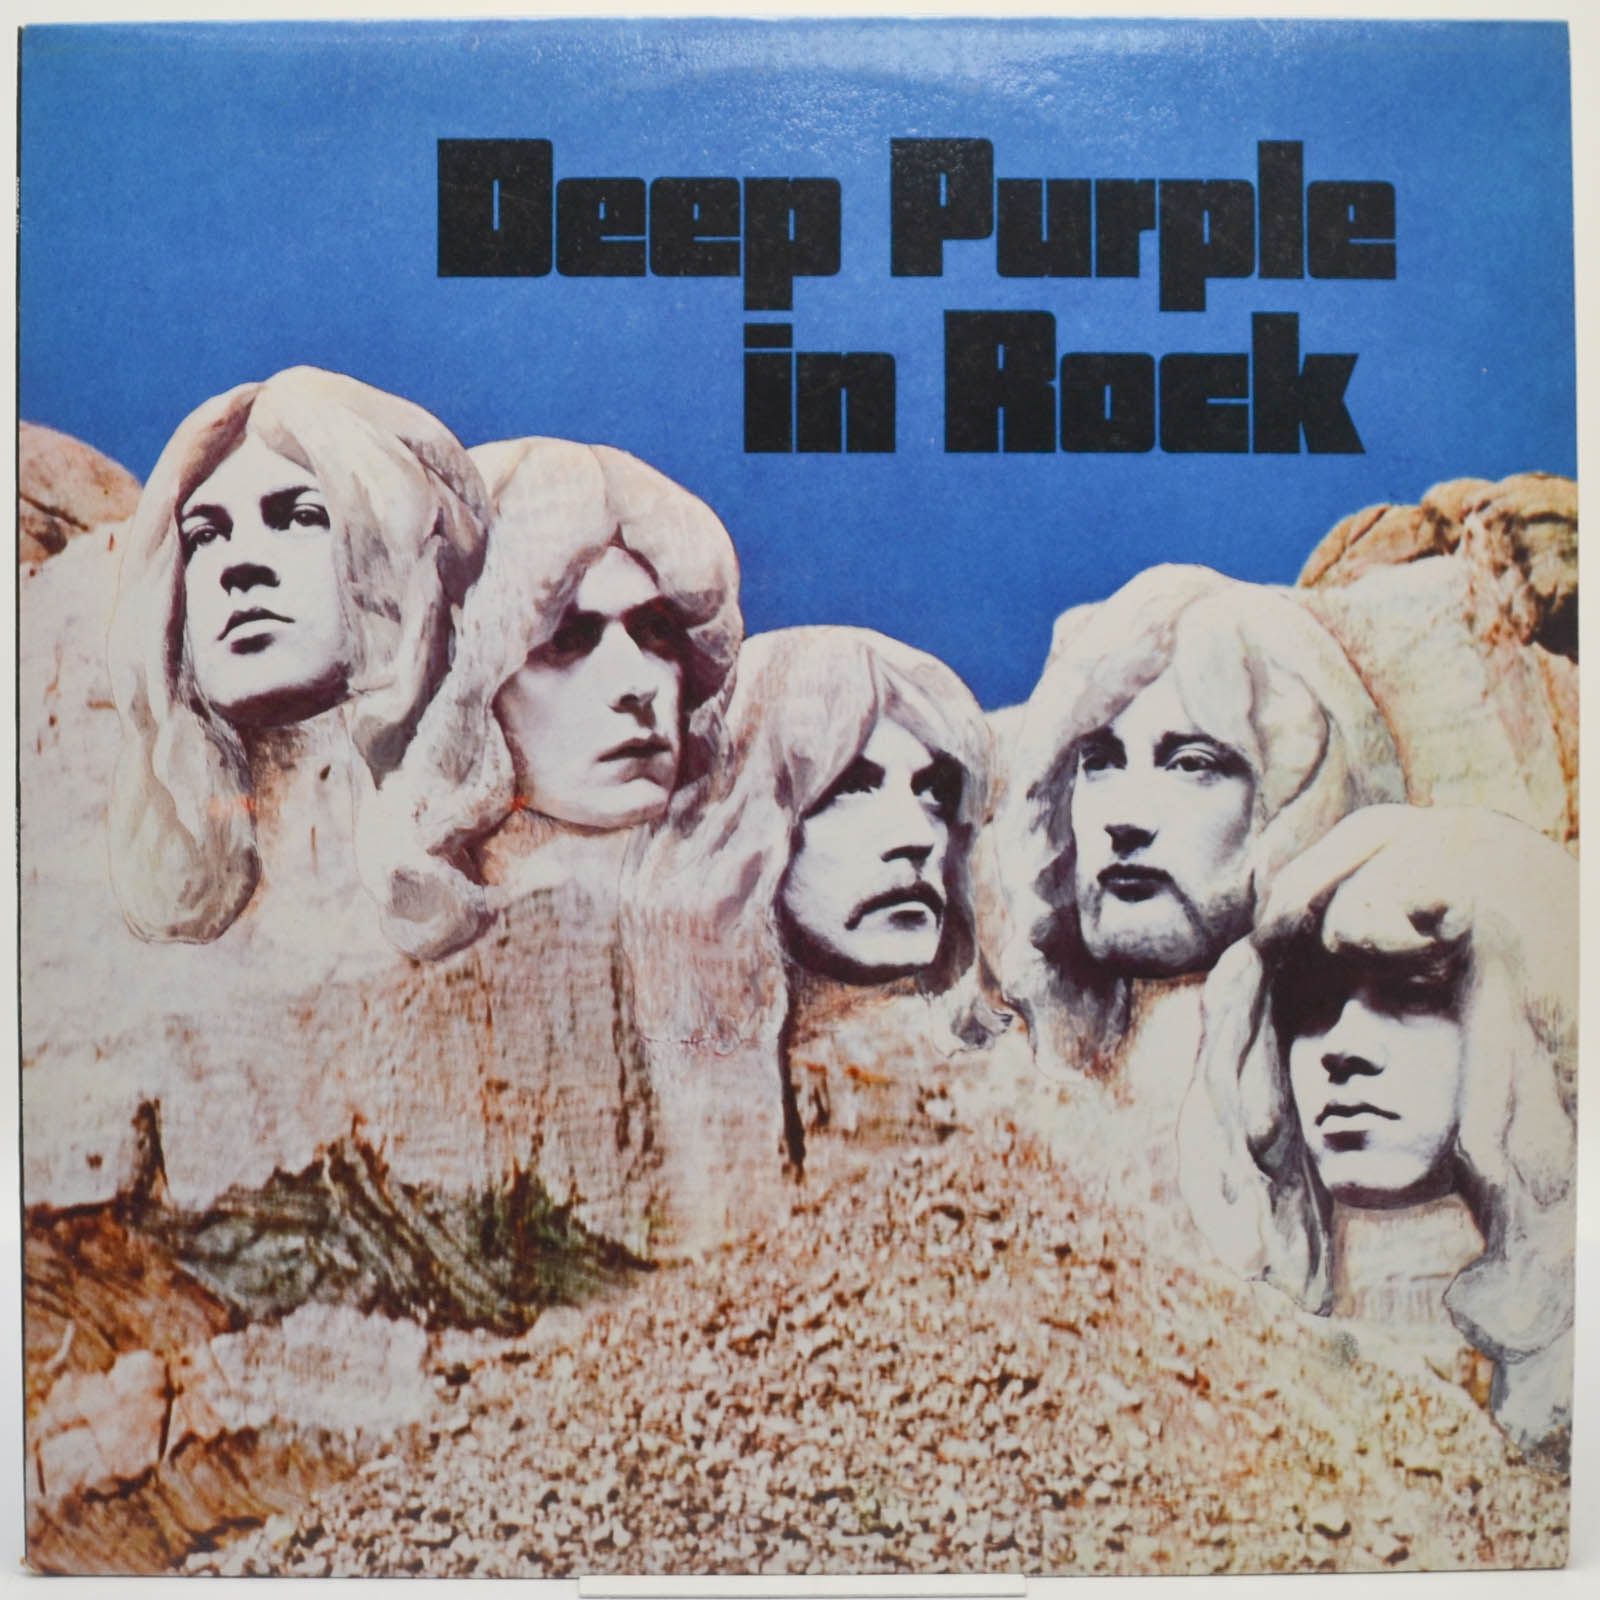 Deep Purple — In Rock, 1970